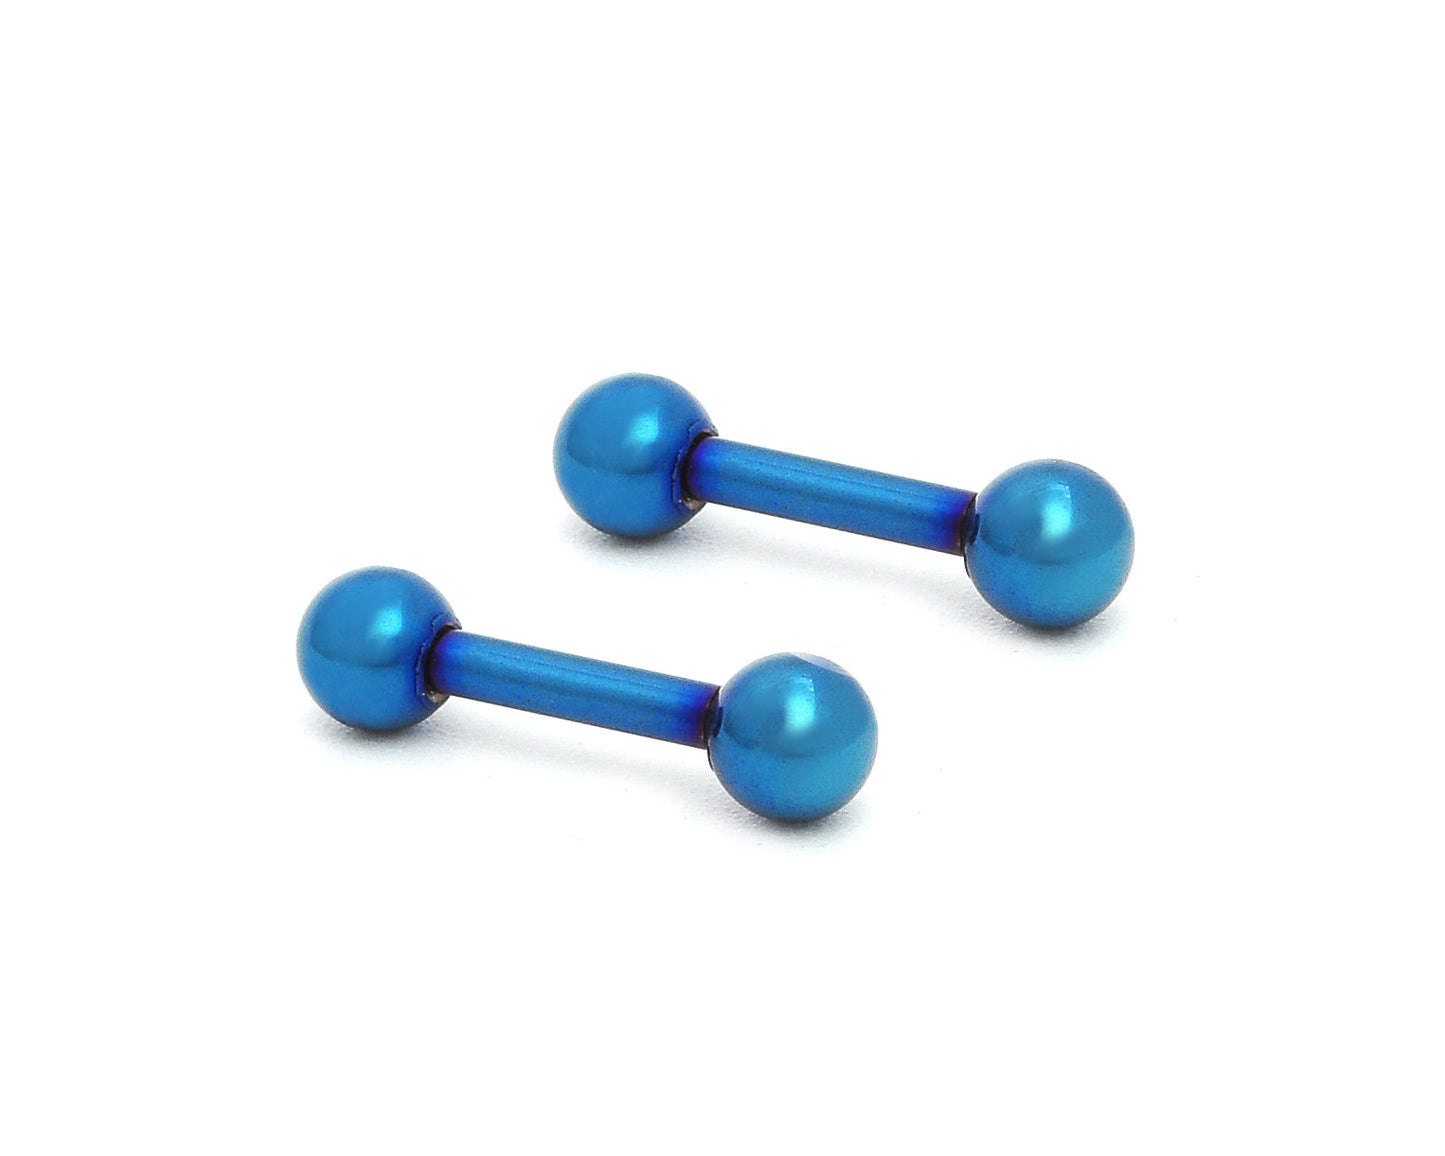 1 Dark Blue Stainless Steel Ball Barbell Ear Piercing Studs Earrings Body Piercing Jewelry